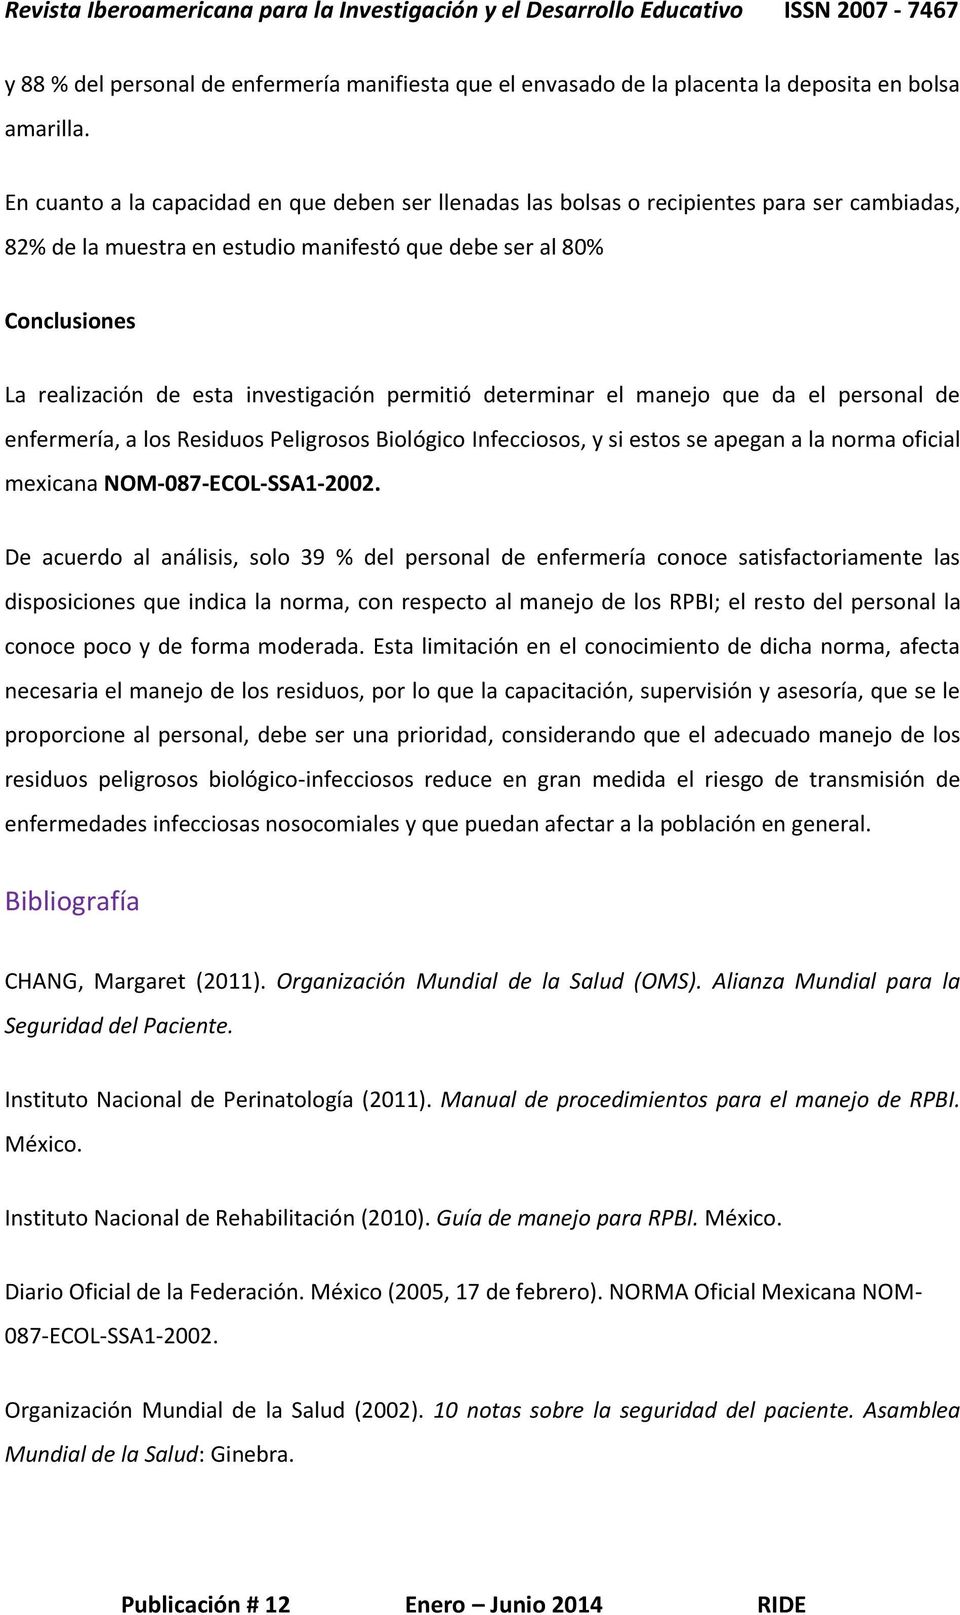 investigación permitió determinar el manejo que da el personal de enfermería, a los Residuos Peligrosos Biológico Infecciosos, y si estos se apegan a la norma oficial mexicana NOM-087-ECOL-SSA1-2002.